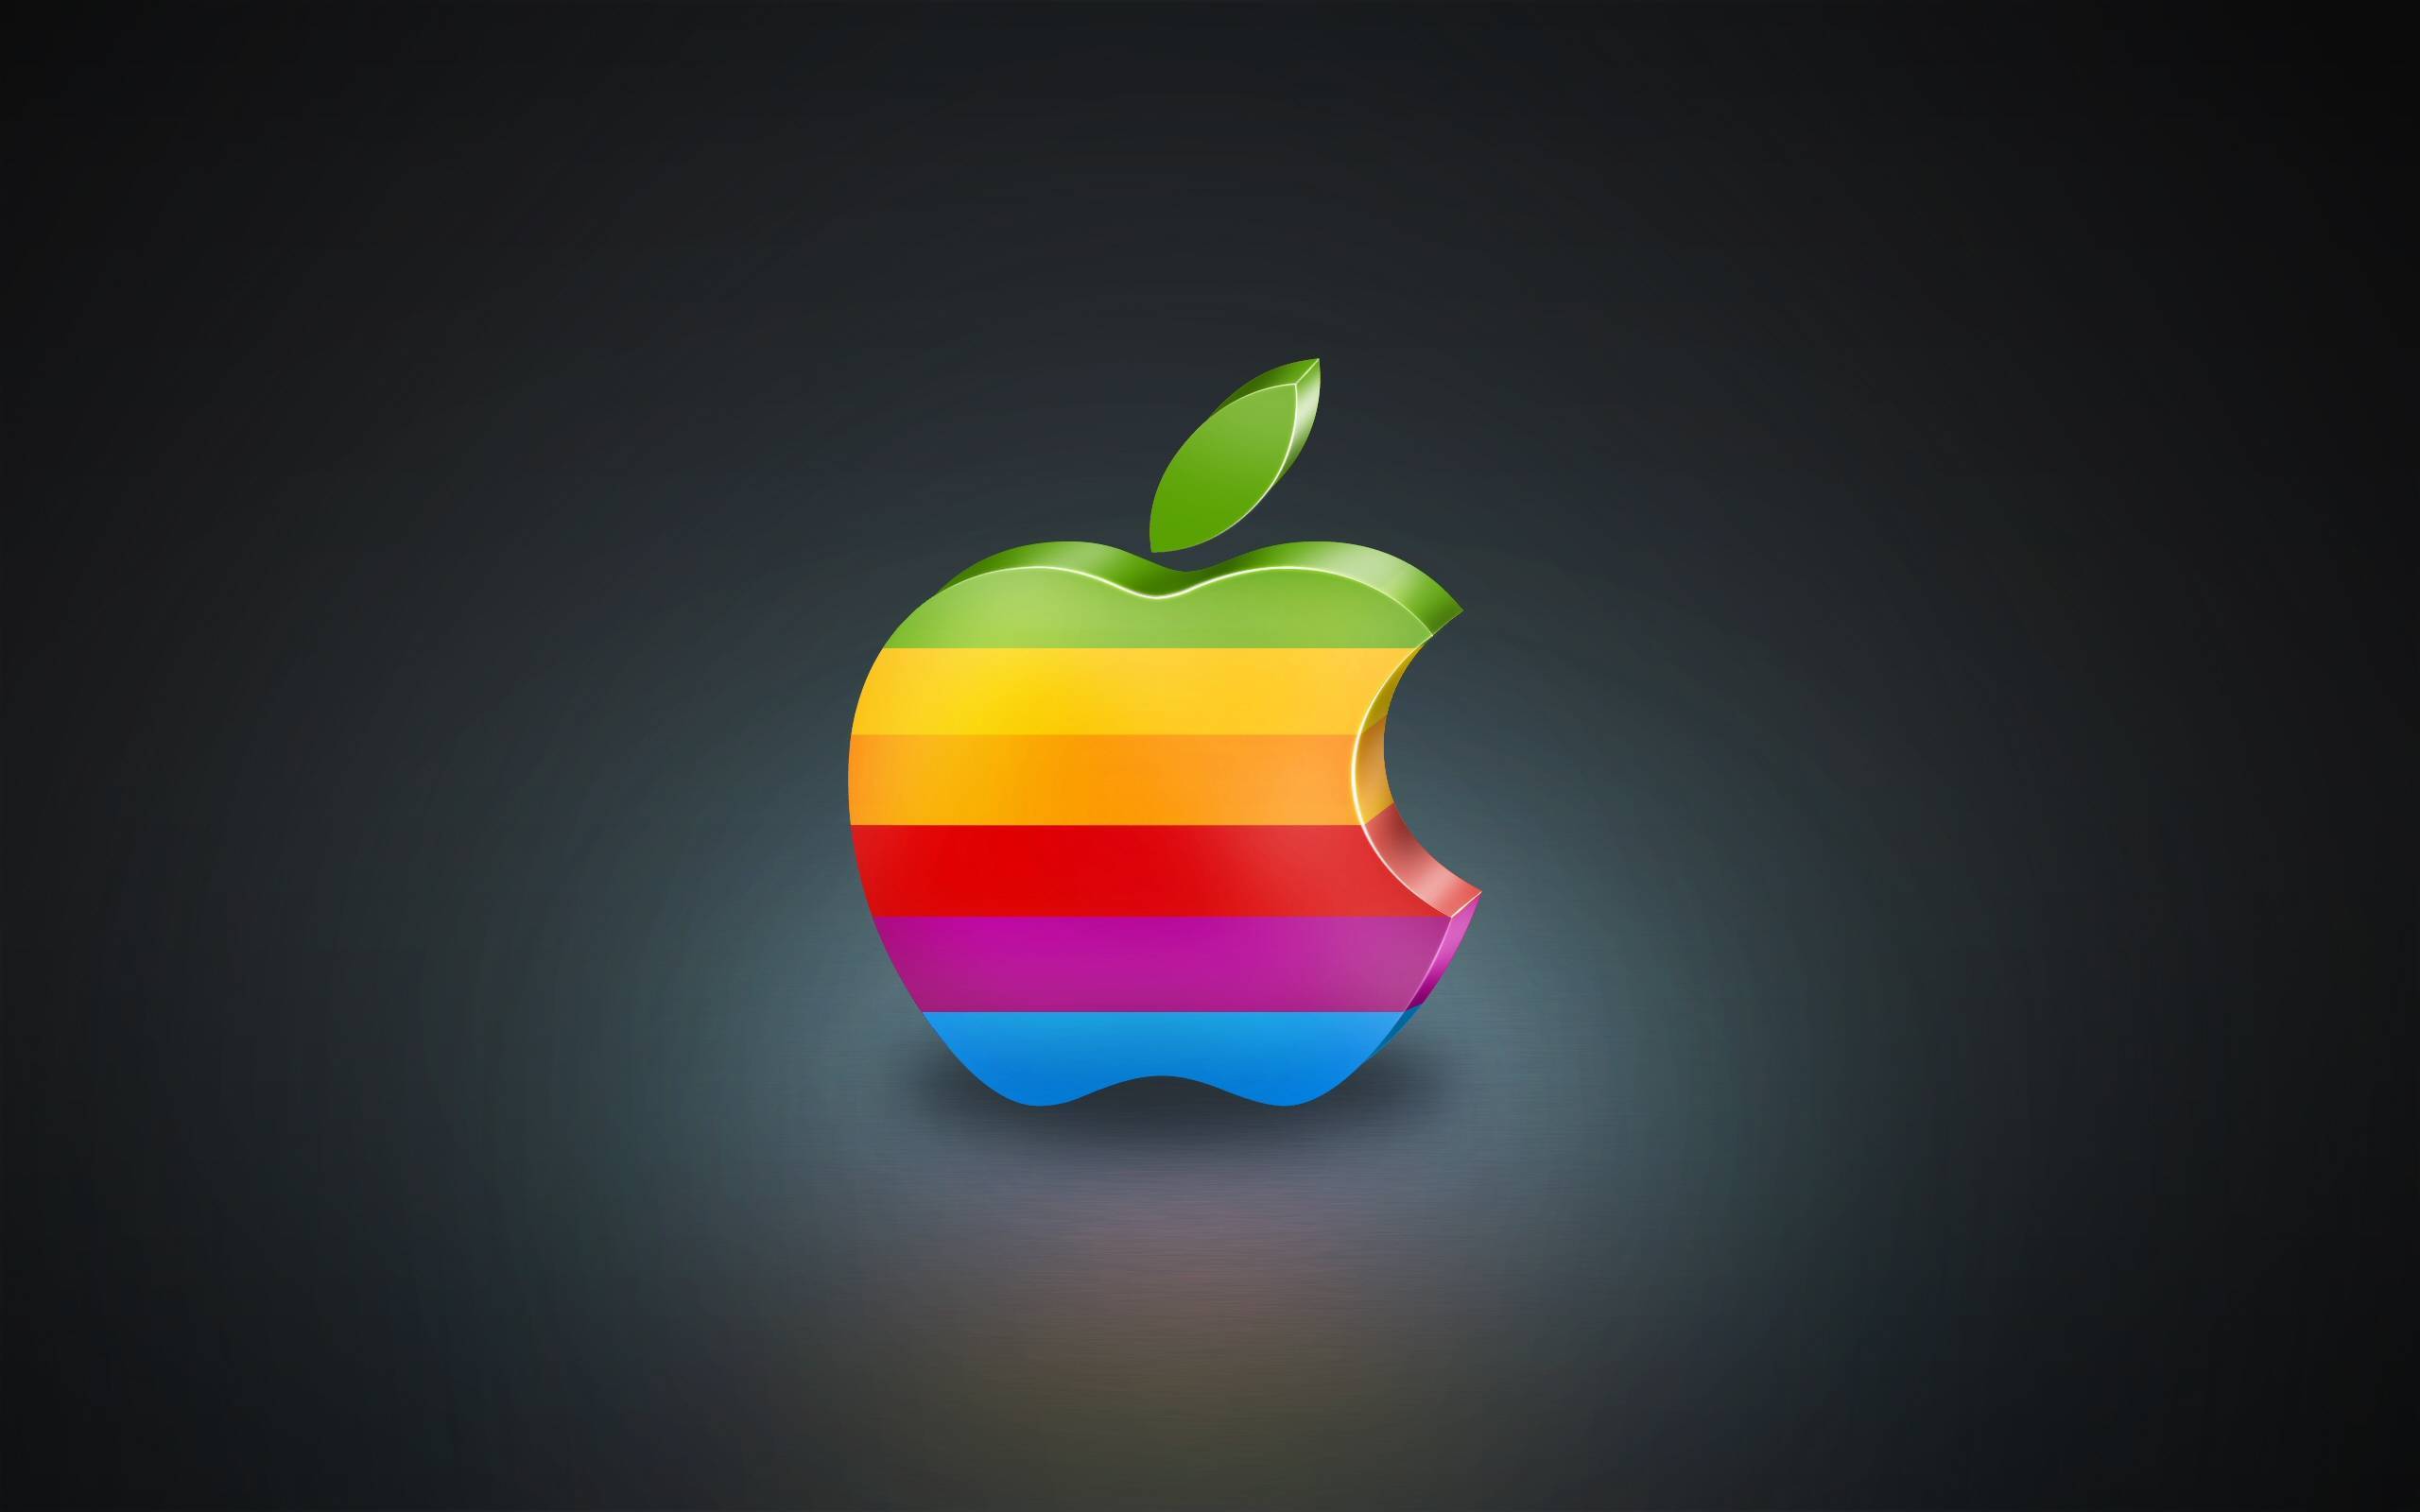 Обои на айфон яблоко. Лого эпл 3д. Яблоко айфон. Яблочко Эппл. Разноцветное яблоко Apple.